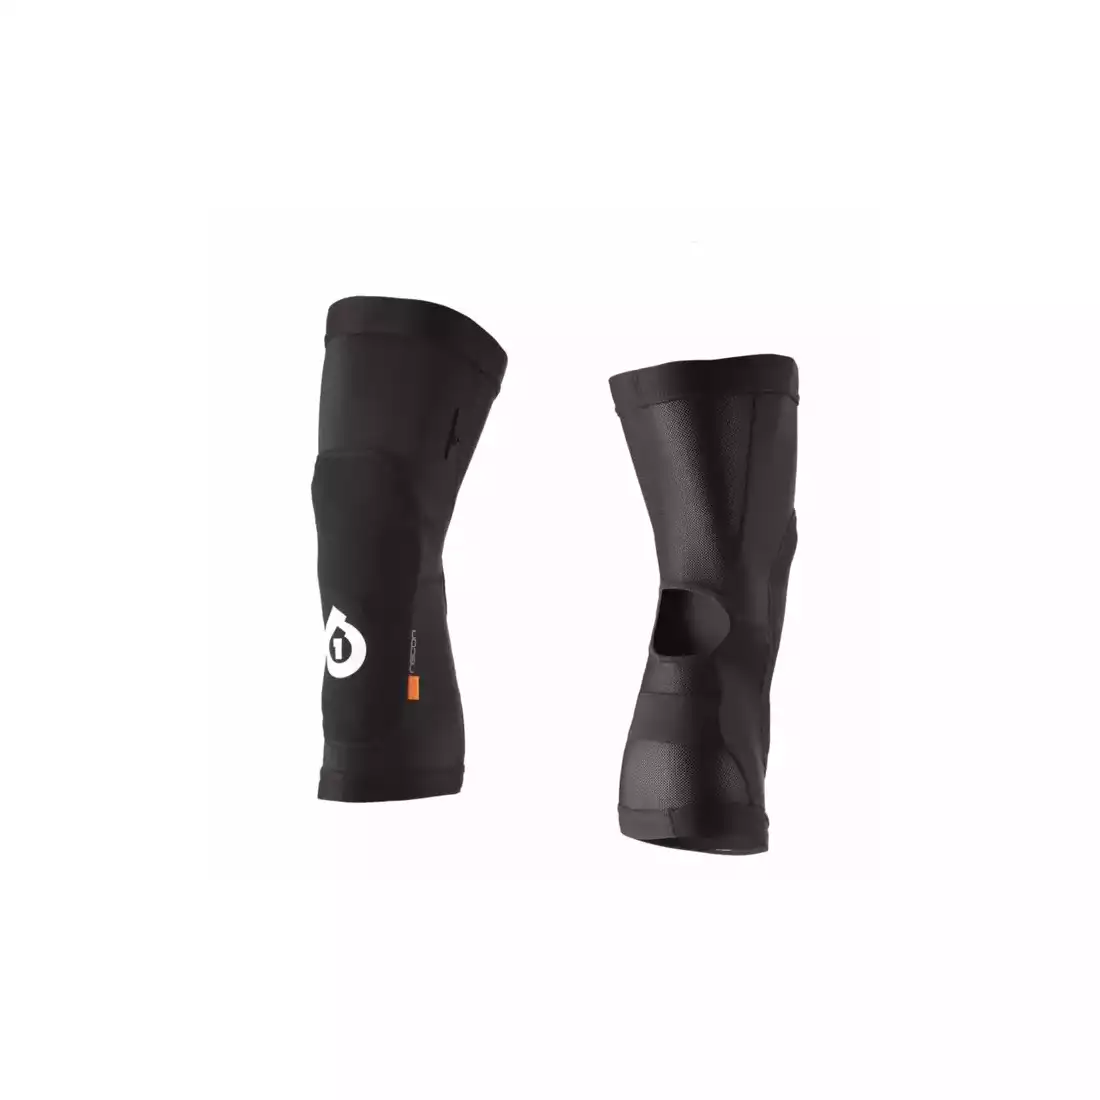 661 RECON II knee pads, black